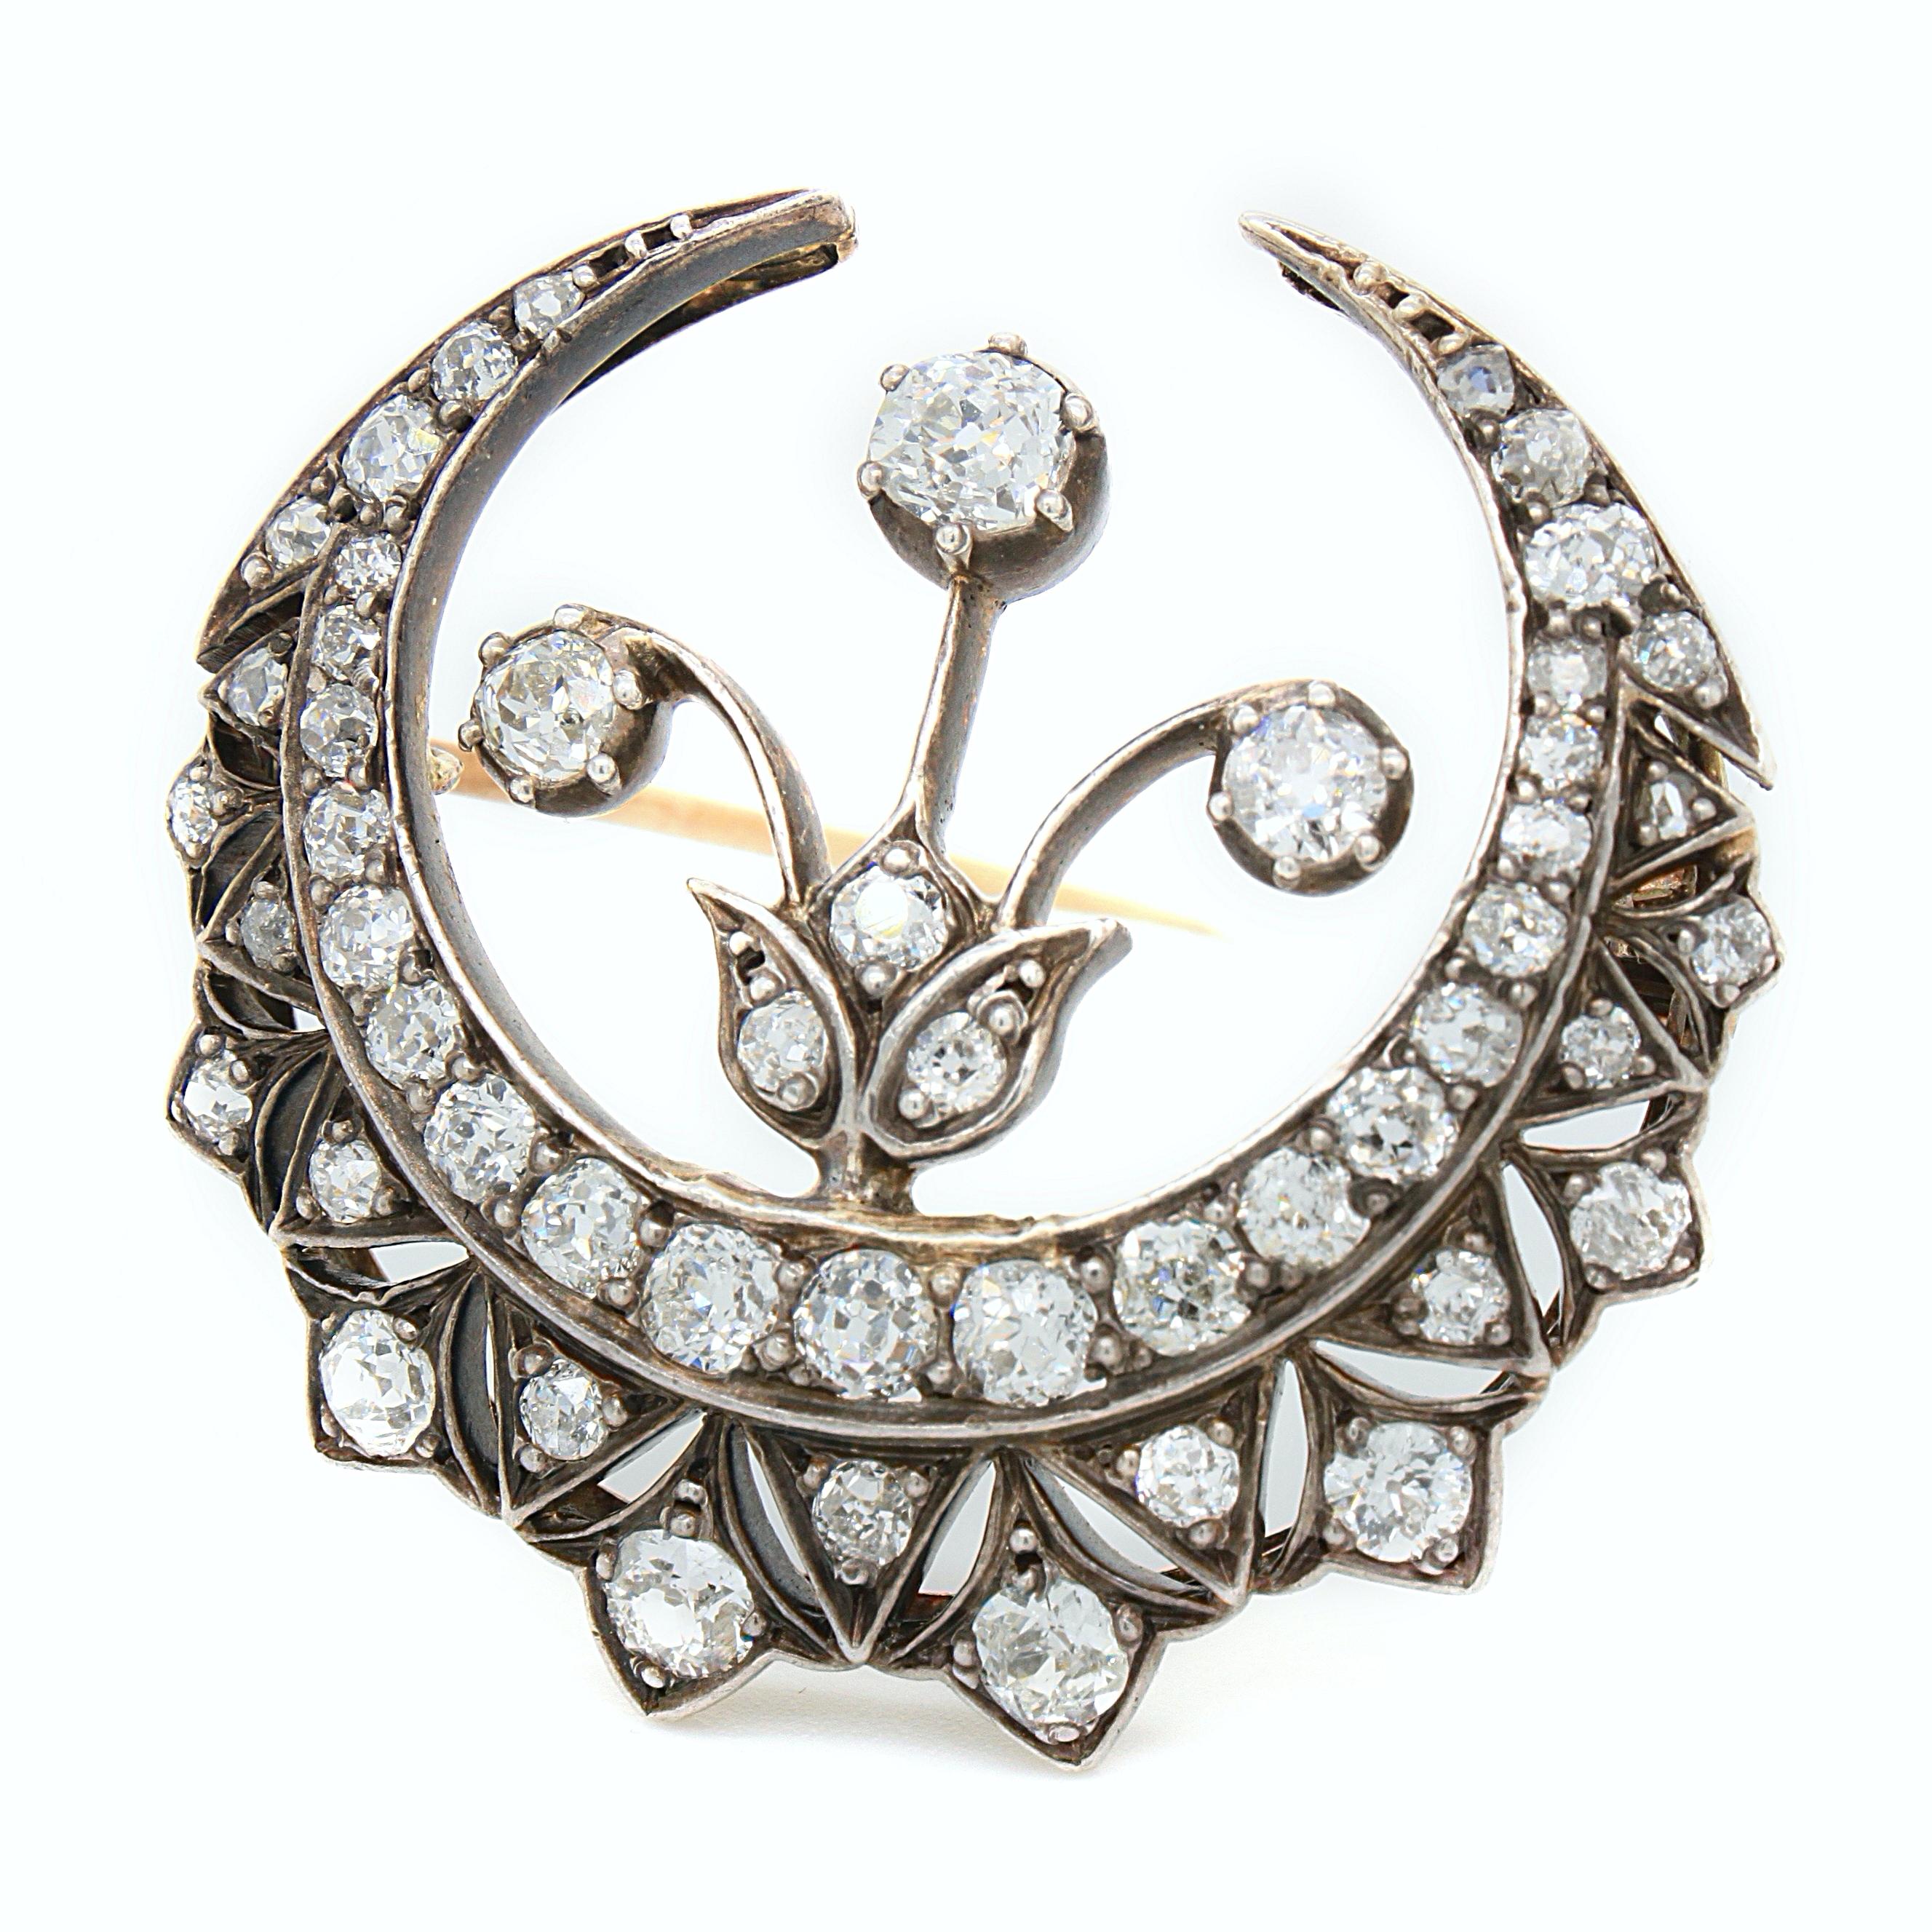 Broche victorienne en forme de croissant et de fleur en diamant, en argent et en or, vers les années 1880. 

Le croissant a un beau dessin avec une fleur attachée au centre, créant un bijou esthétique et symbolique.
La broche est sertie de nombreux